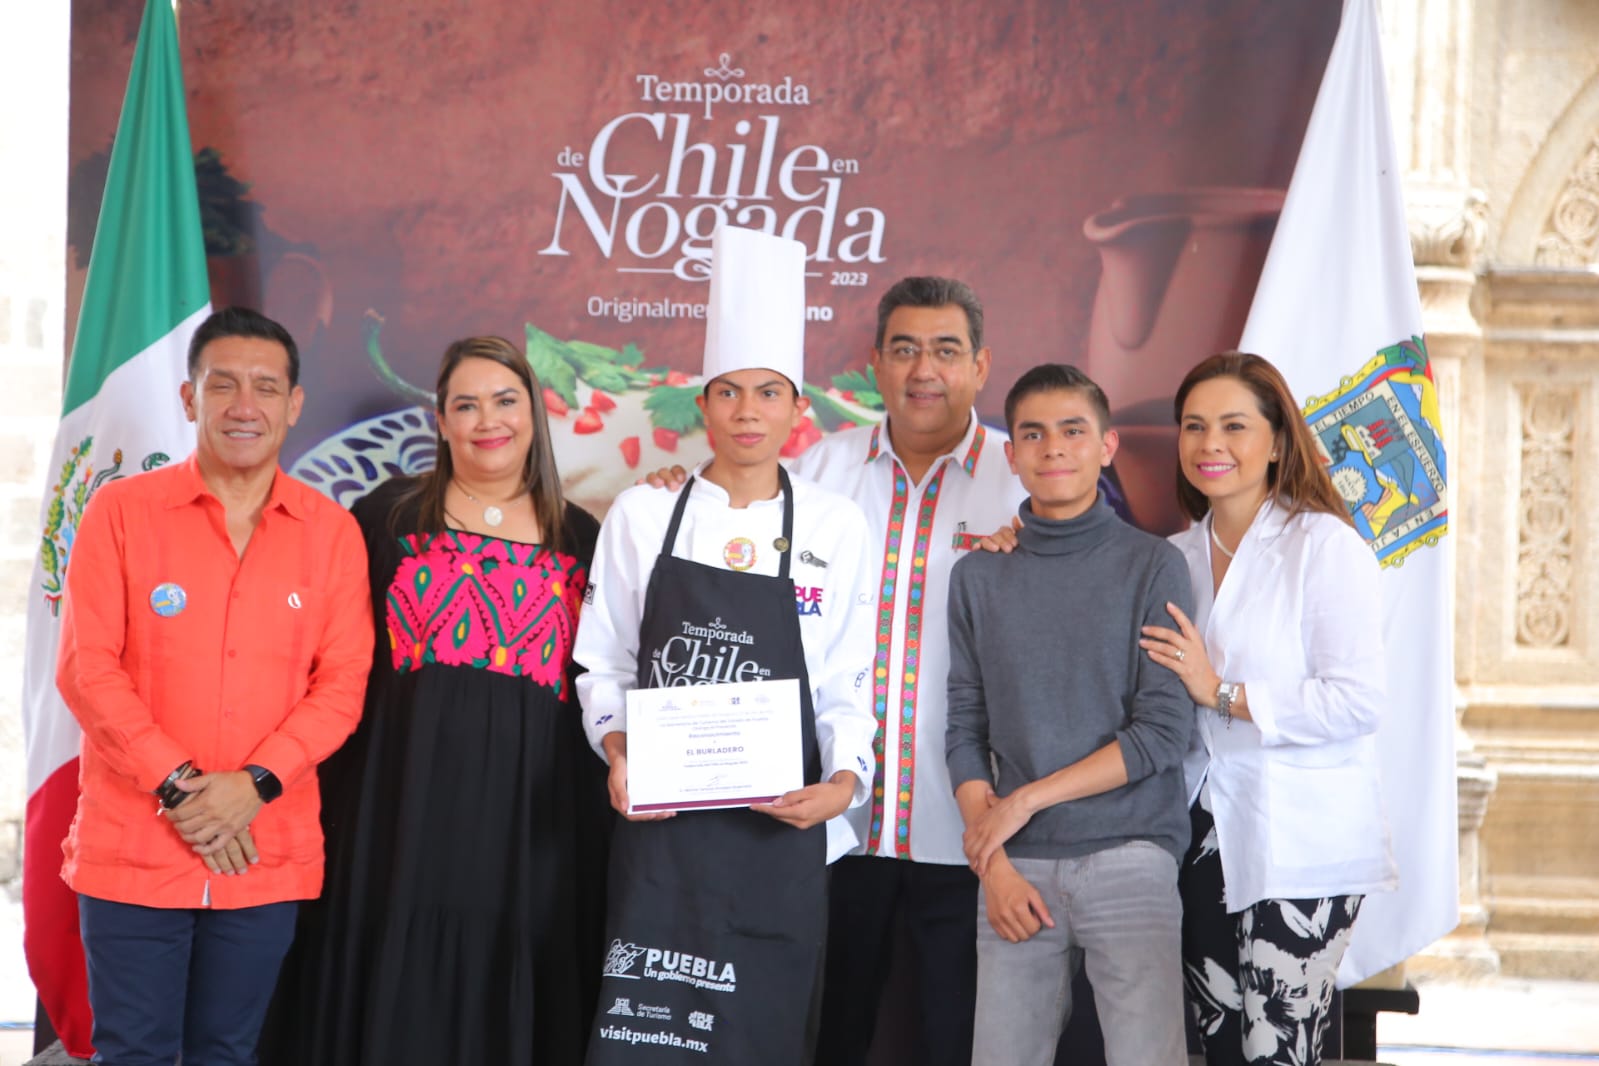 Chile en nogada, origen y orgullo de Puebla: Céspedes; inicia temporada 2023